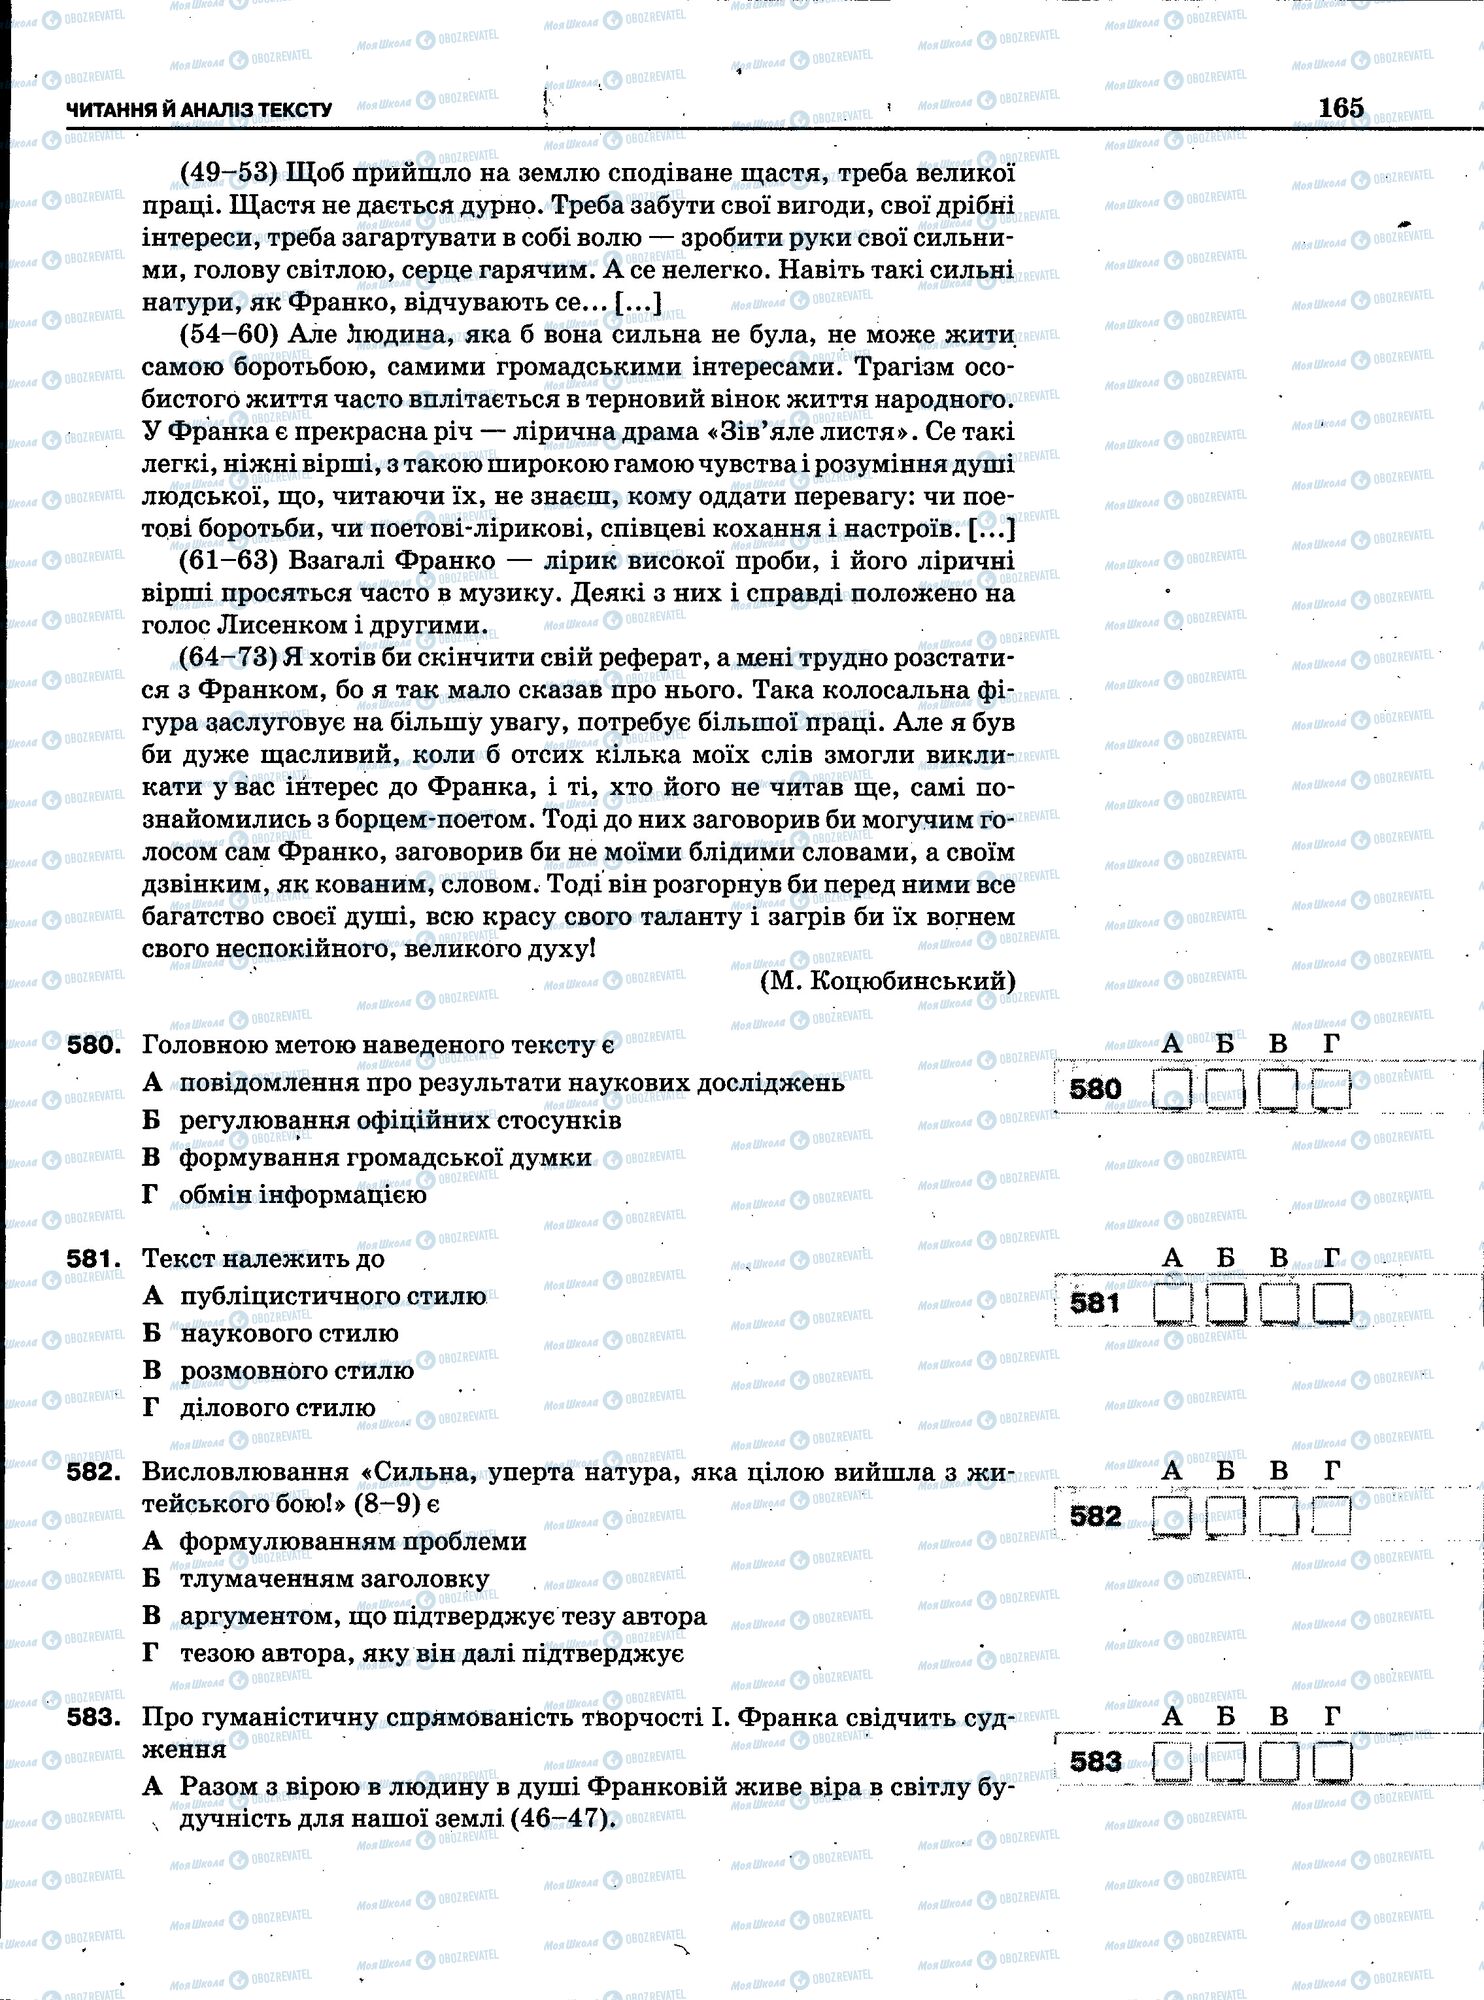 ЗНО Укр мова 11 класс страница 163